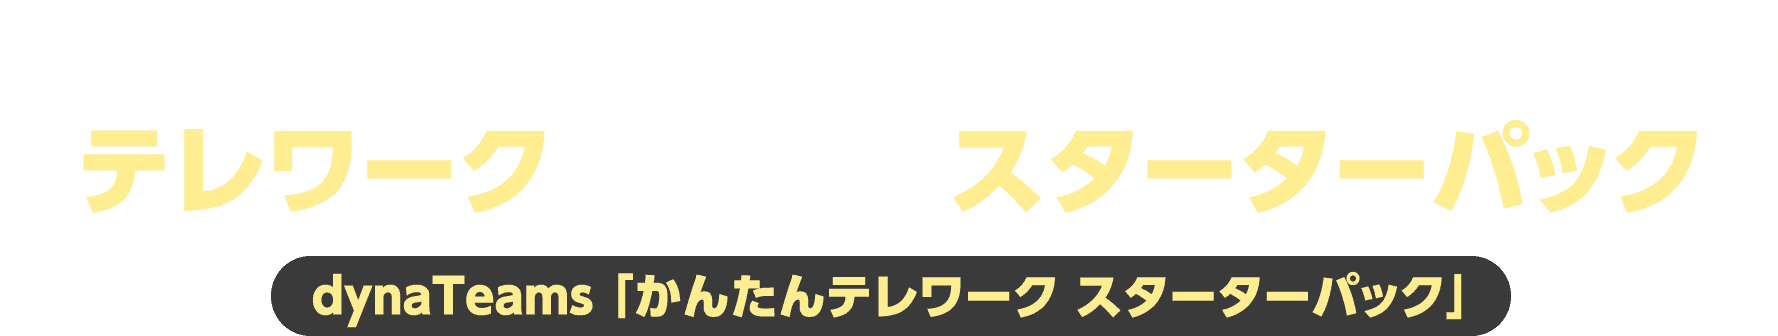 PCを知り尽くしたDynabookが提案するテレワークのためのスターターパック dynaTeams 「かんたんテレワーク スターターパック」